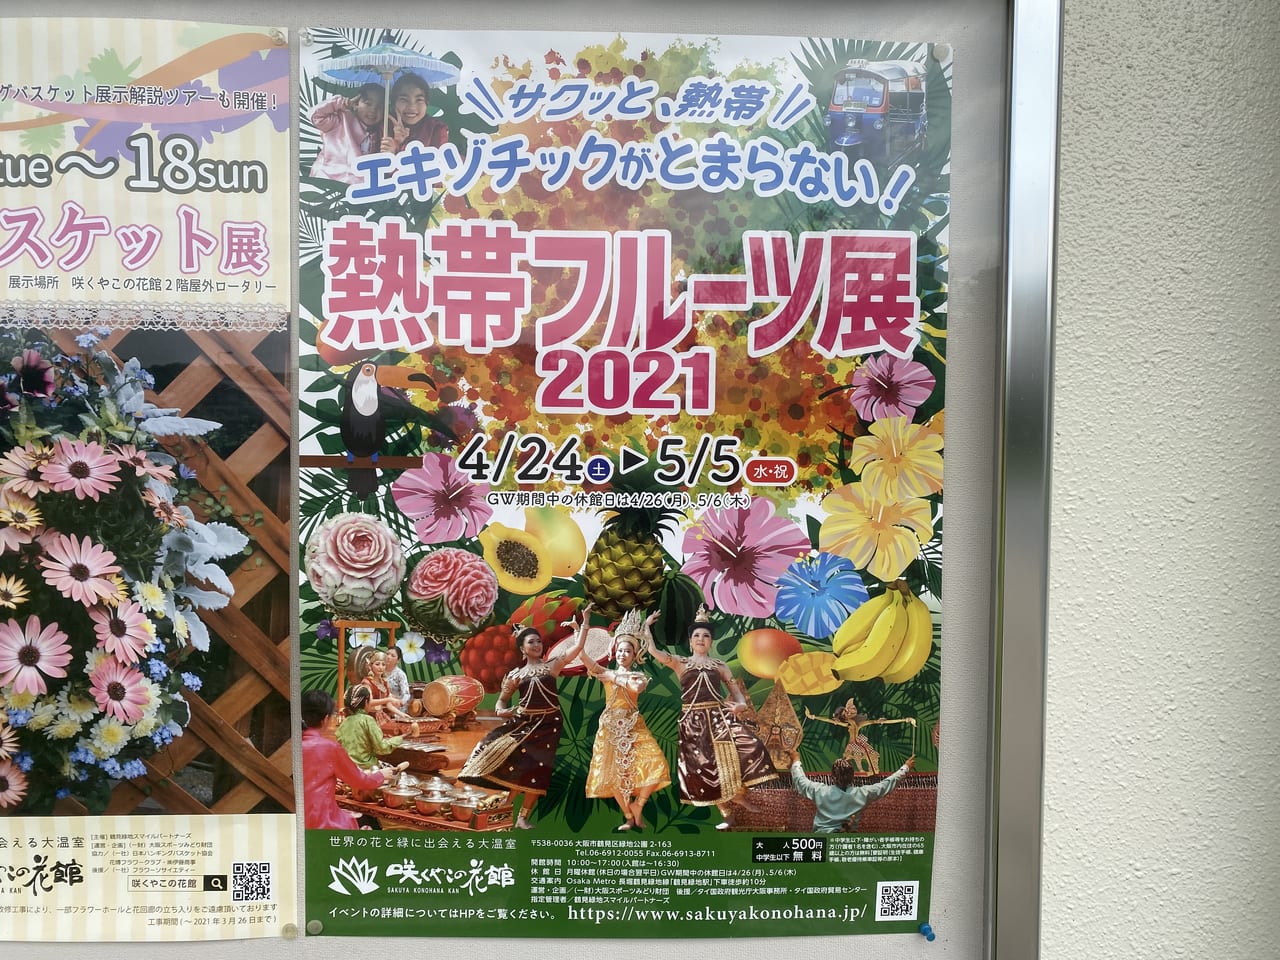 大阪市鶴見区 音楽や舞踊ステージなども 咲くやこの花館にて 熱帯フルーツ展21 が開催されます 号外net 鶴見 城東